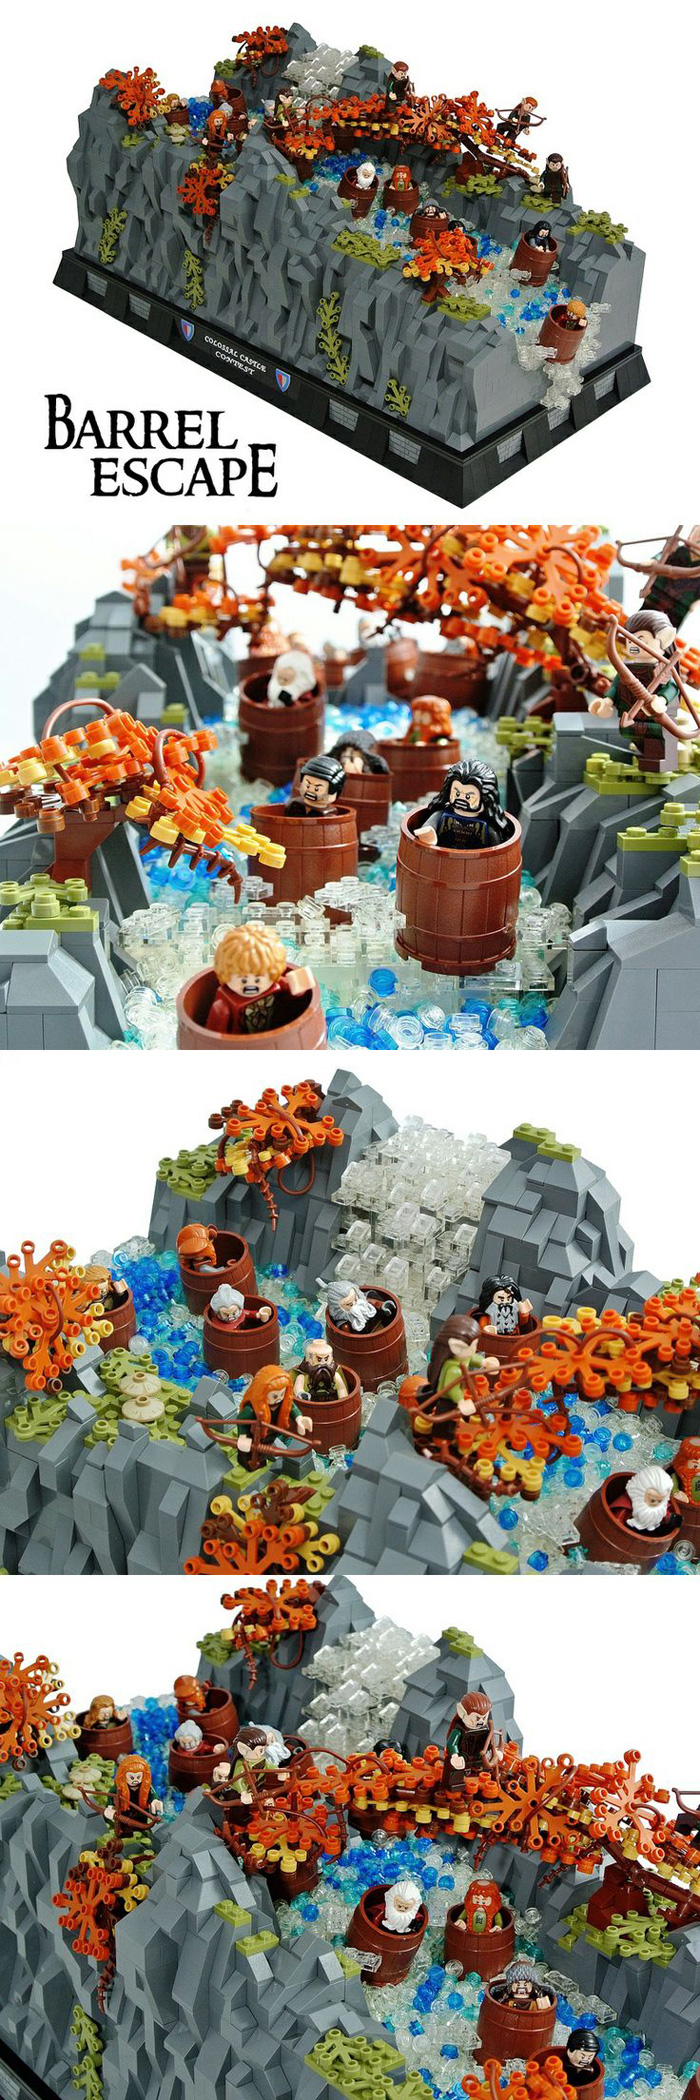 The Hobbit Barrel Escape LEGO